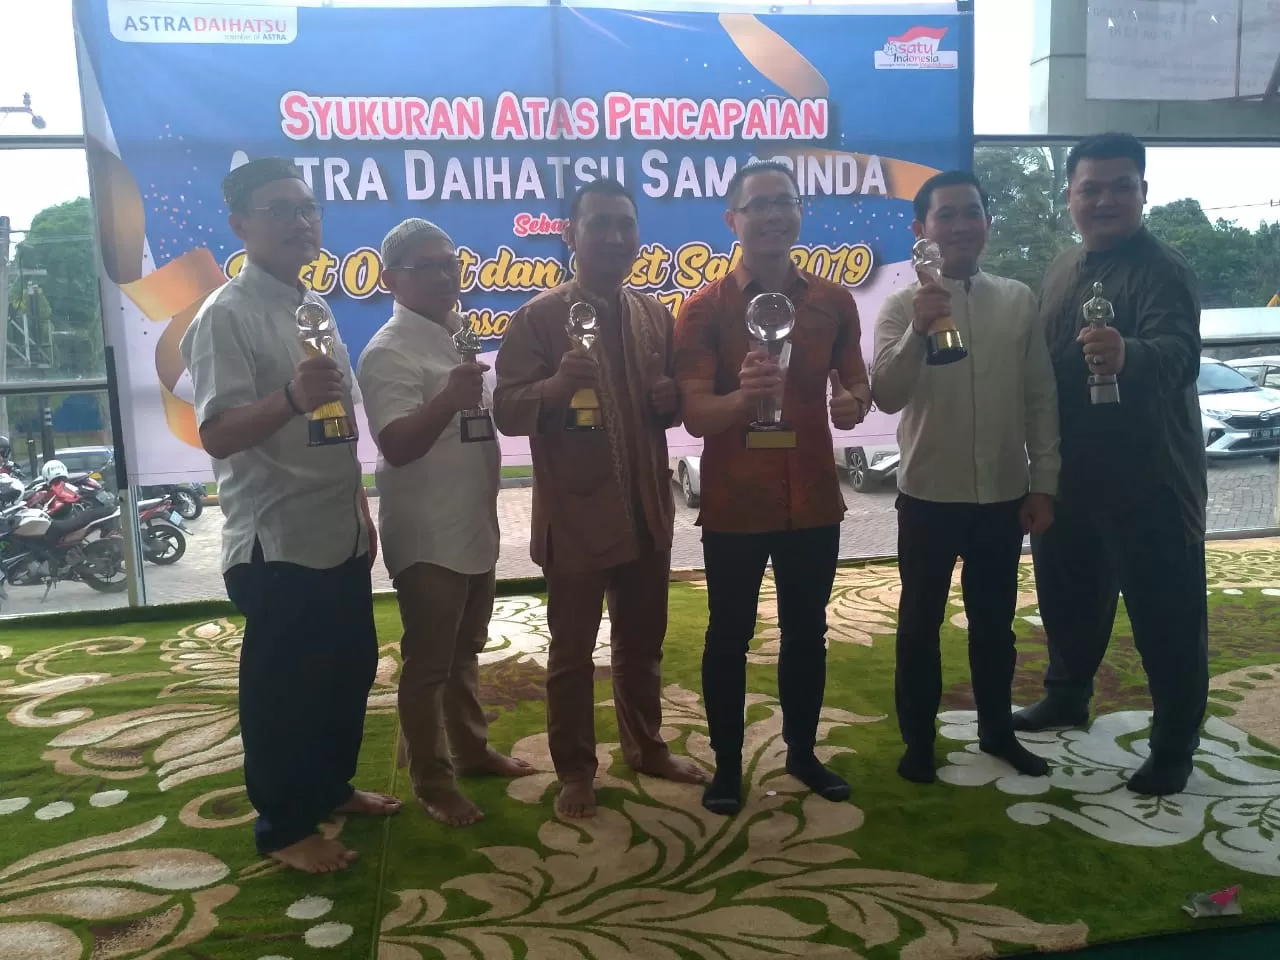 BACK TO BACK. Jajaran Astra Daihatsu Samarinda mengangkat piala atas prestasi mereka sebagai best outlet dan best sales Daihatsu se-Indonesia, bersama para anak yatim piatu di acara syukuran keberhasilan tersebut.